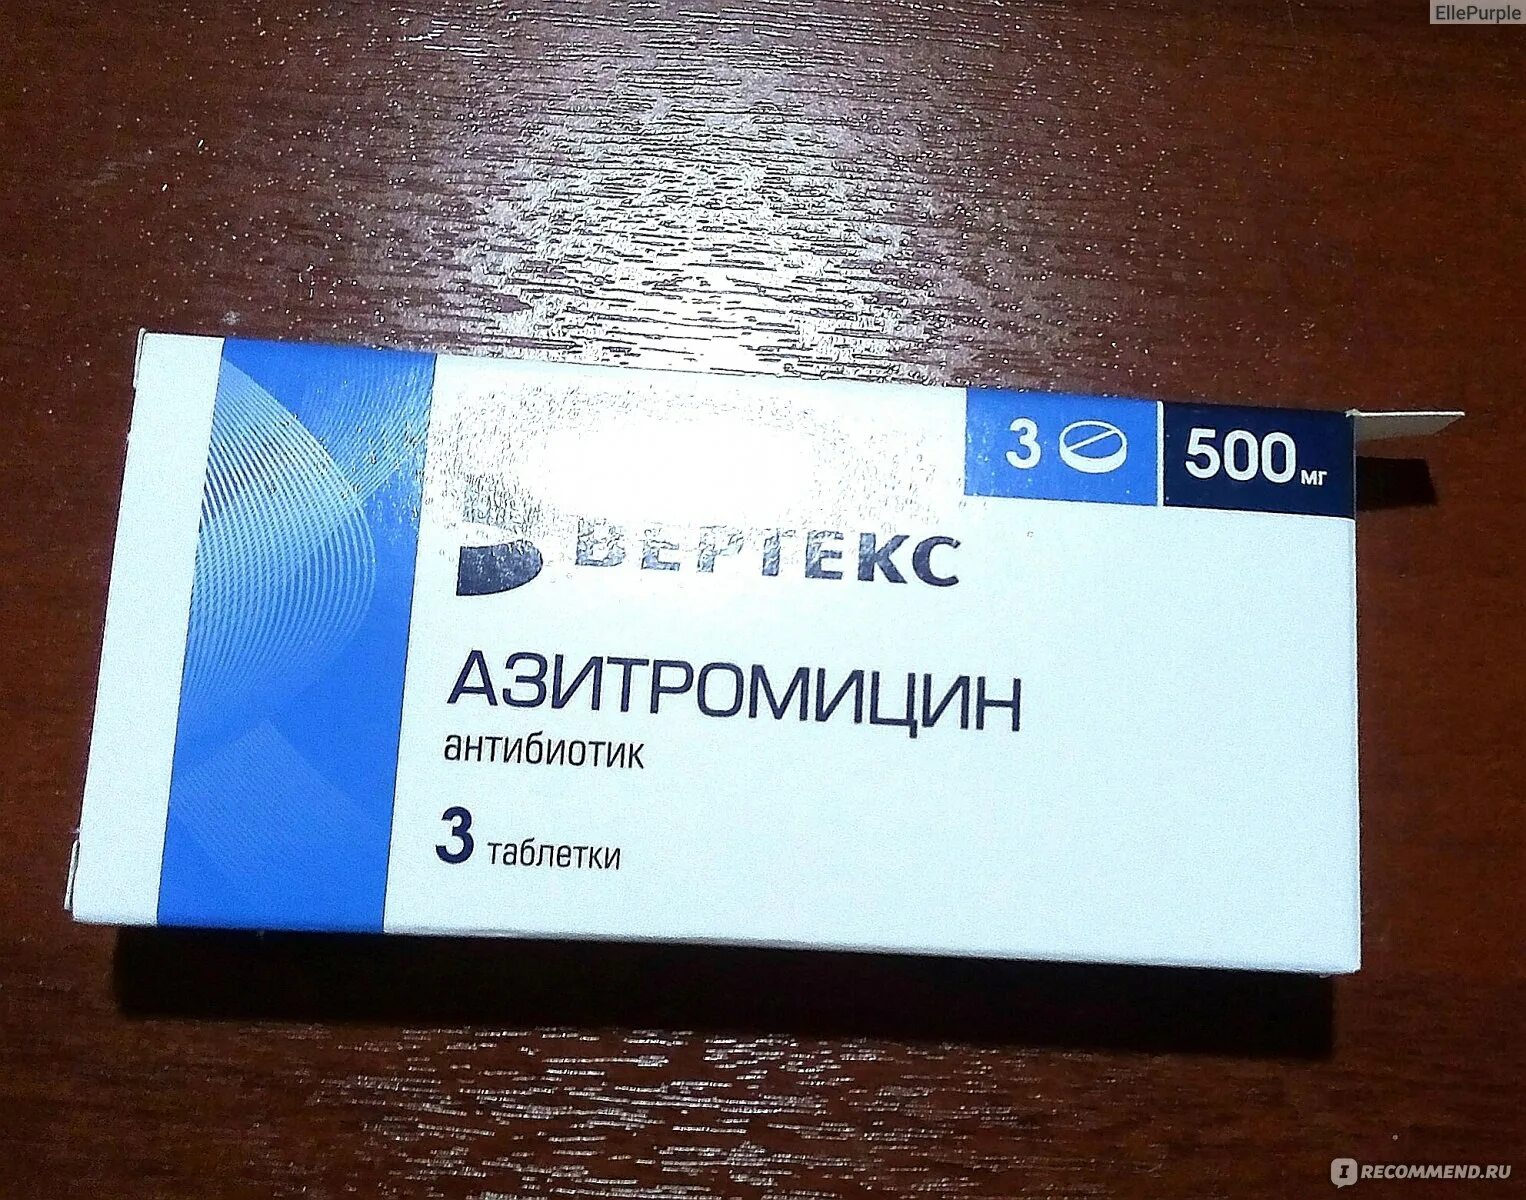 Антибиотик Азитромицин 500 мг. Азитромицин 500 таблетки антибиотики. Азитромицин 500 мг Вертекс. Вертекс таблетки Азитромицин антибиотик.